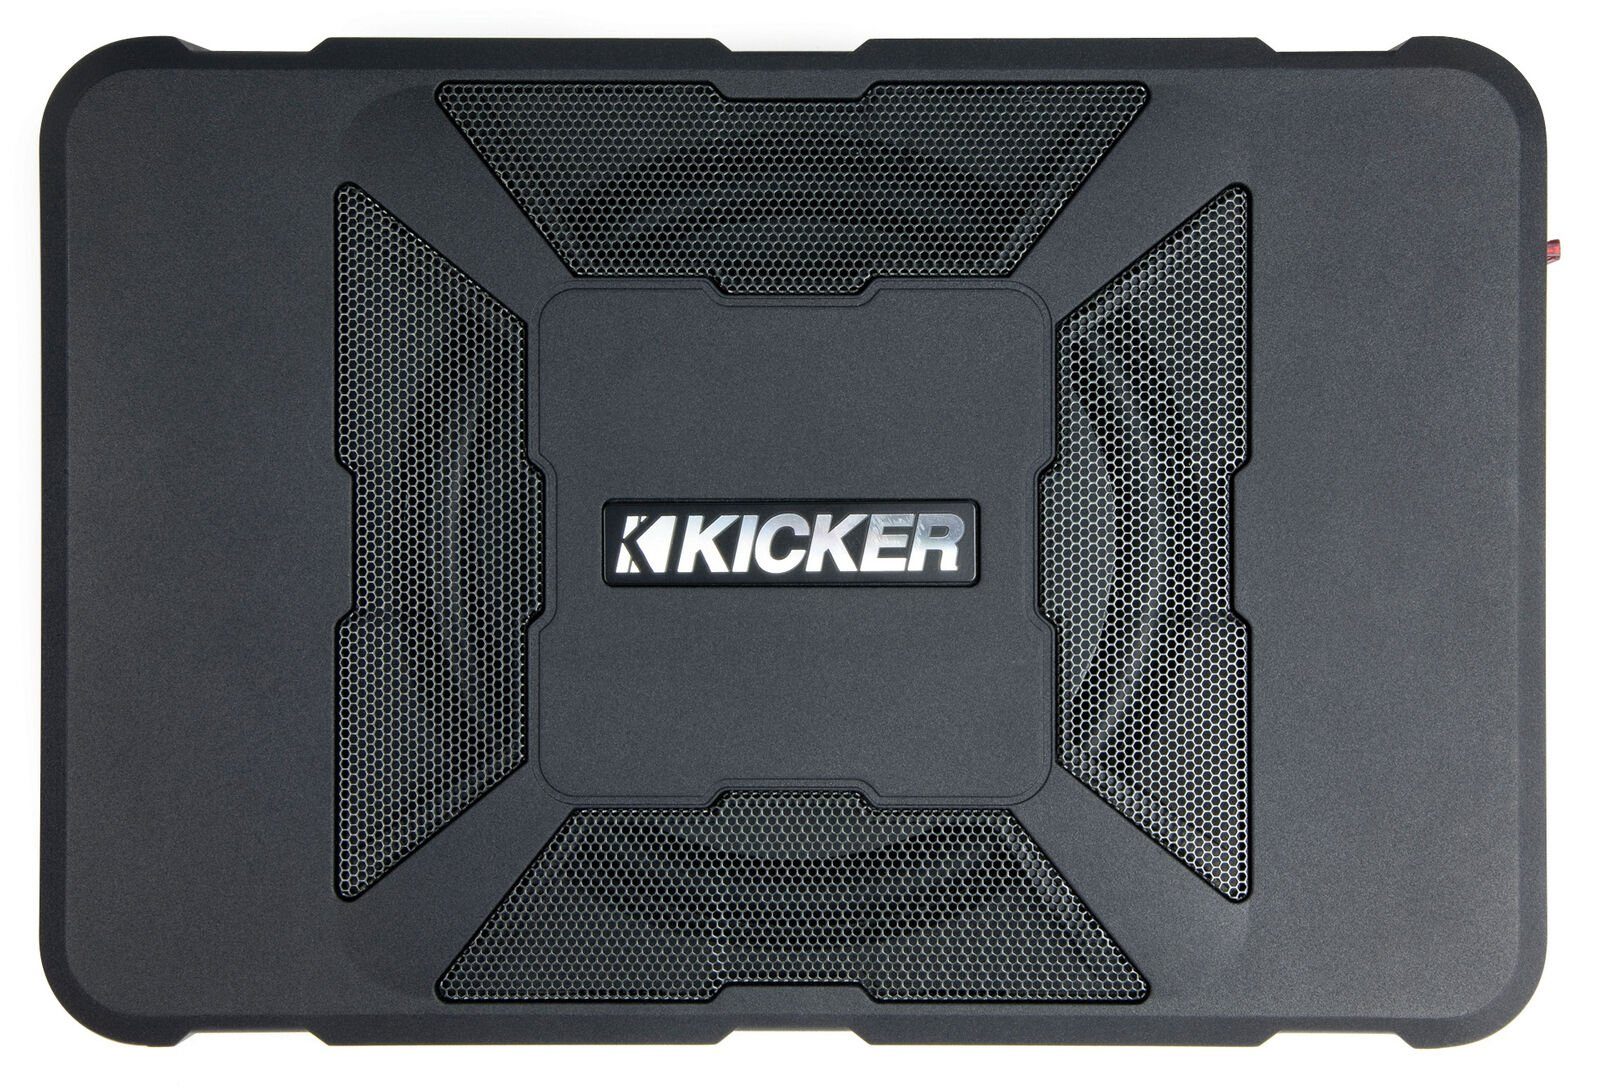 Kicker HS8 8" HS8 Verstärker Auto-Subwoofer 300W Subbox Active Aktiv mit Untersitz Subwoofer